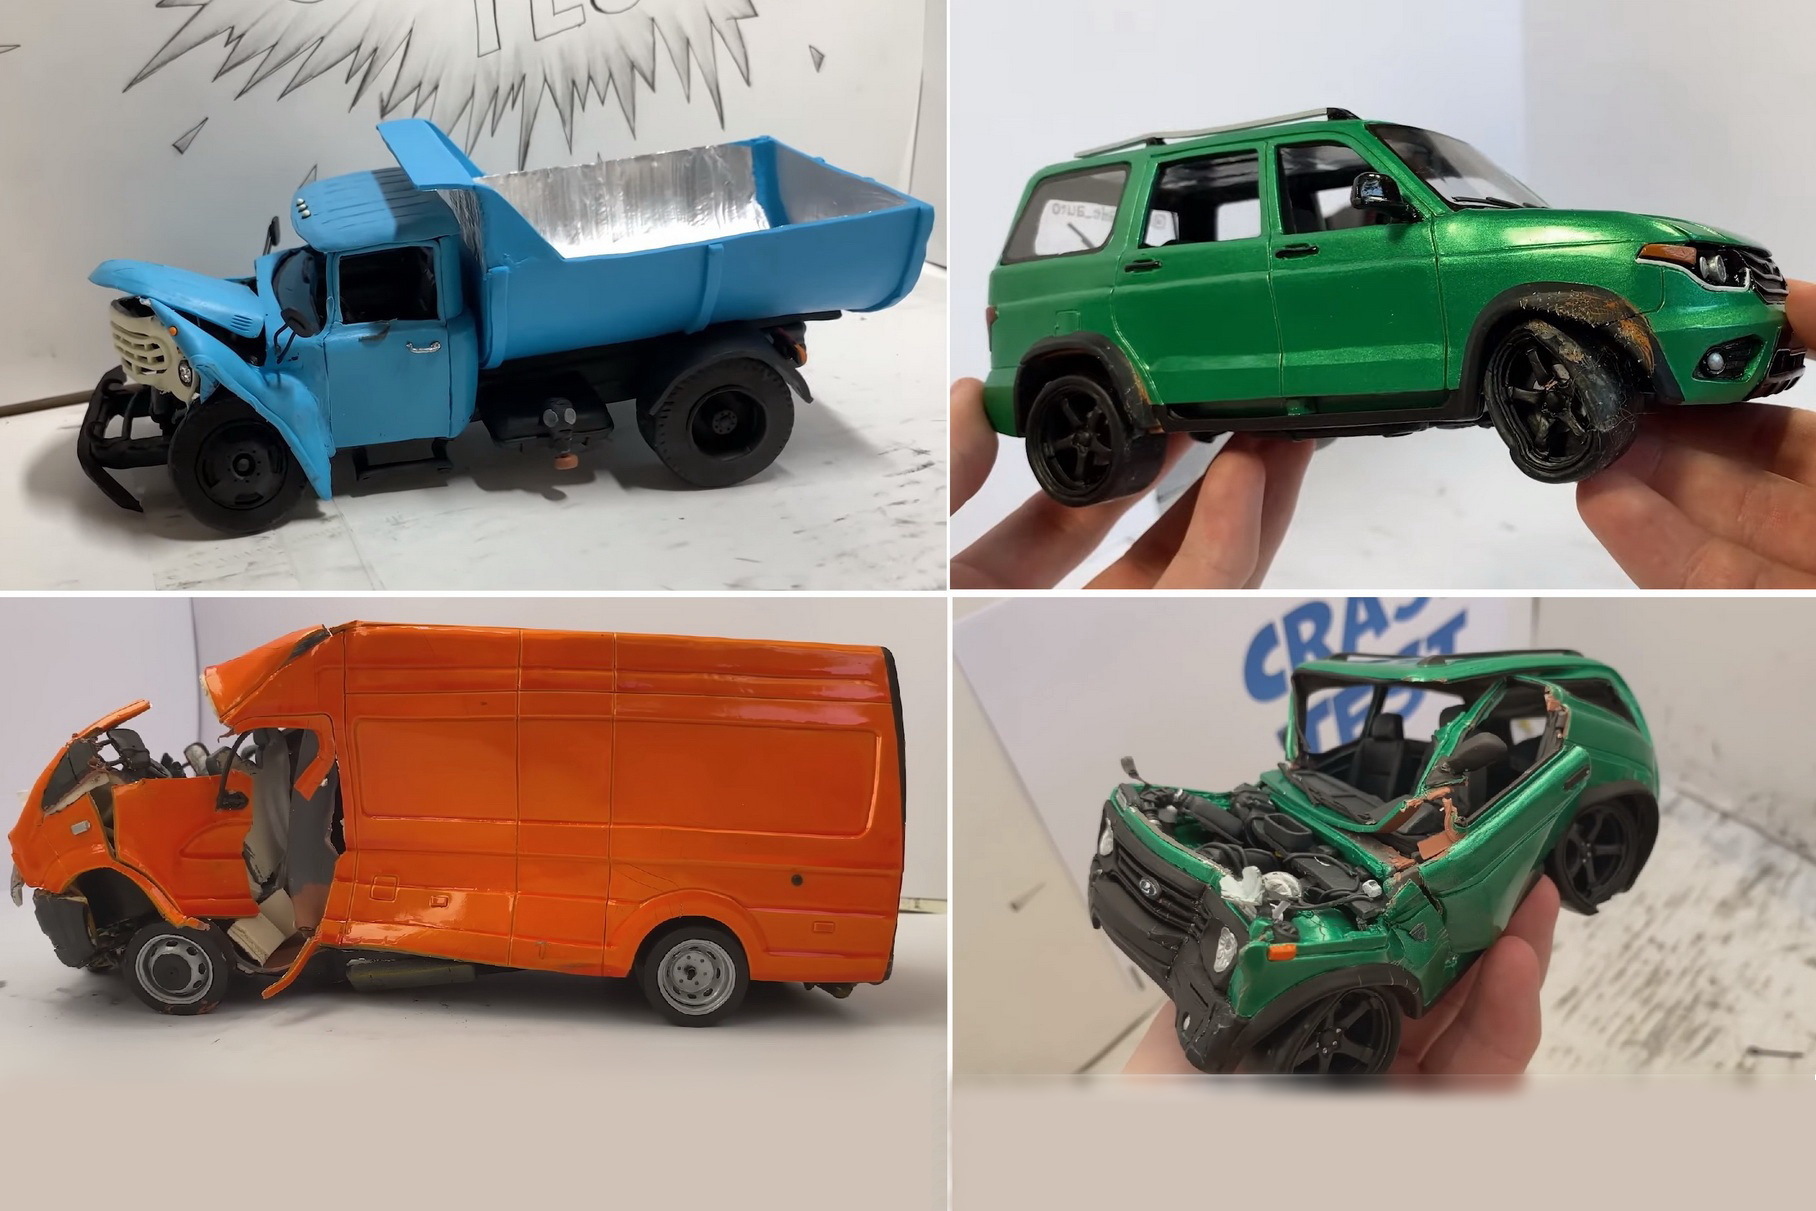 The craftsman showed a video of crash tests of plasticine models UAZ, GAZ and ZIL